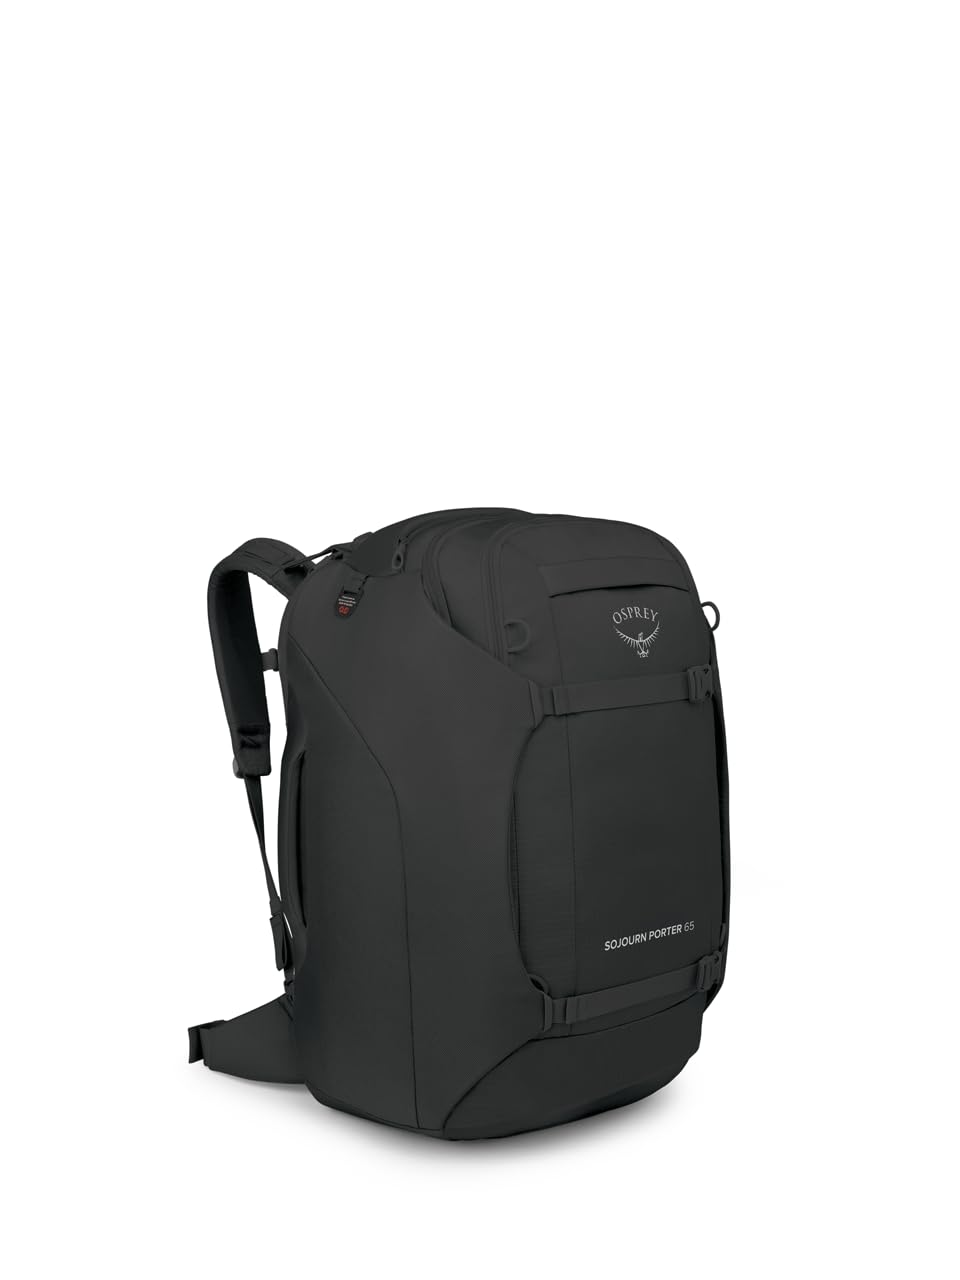 Osprey Sojourn Porter 65L Travel Backpack, Black